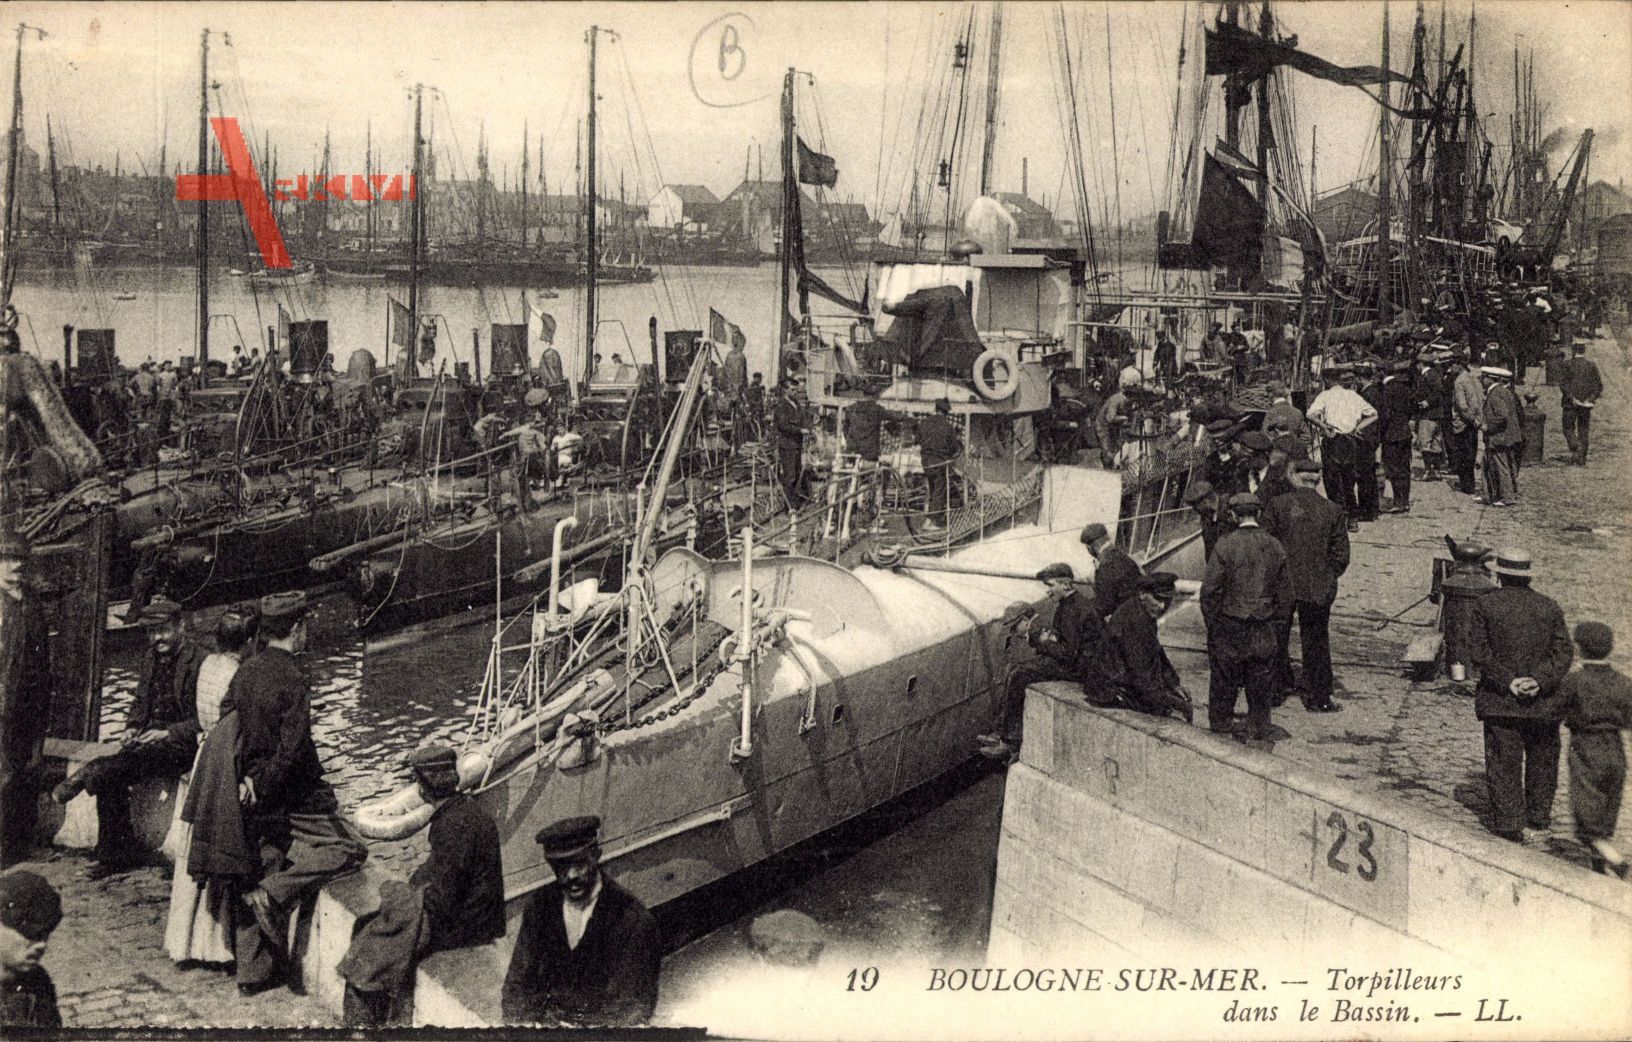 Boulogne sur Mer, Torpilleurs dans le Bassin, Franz. Kriegsschiffe